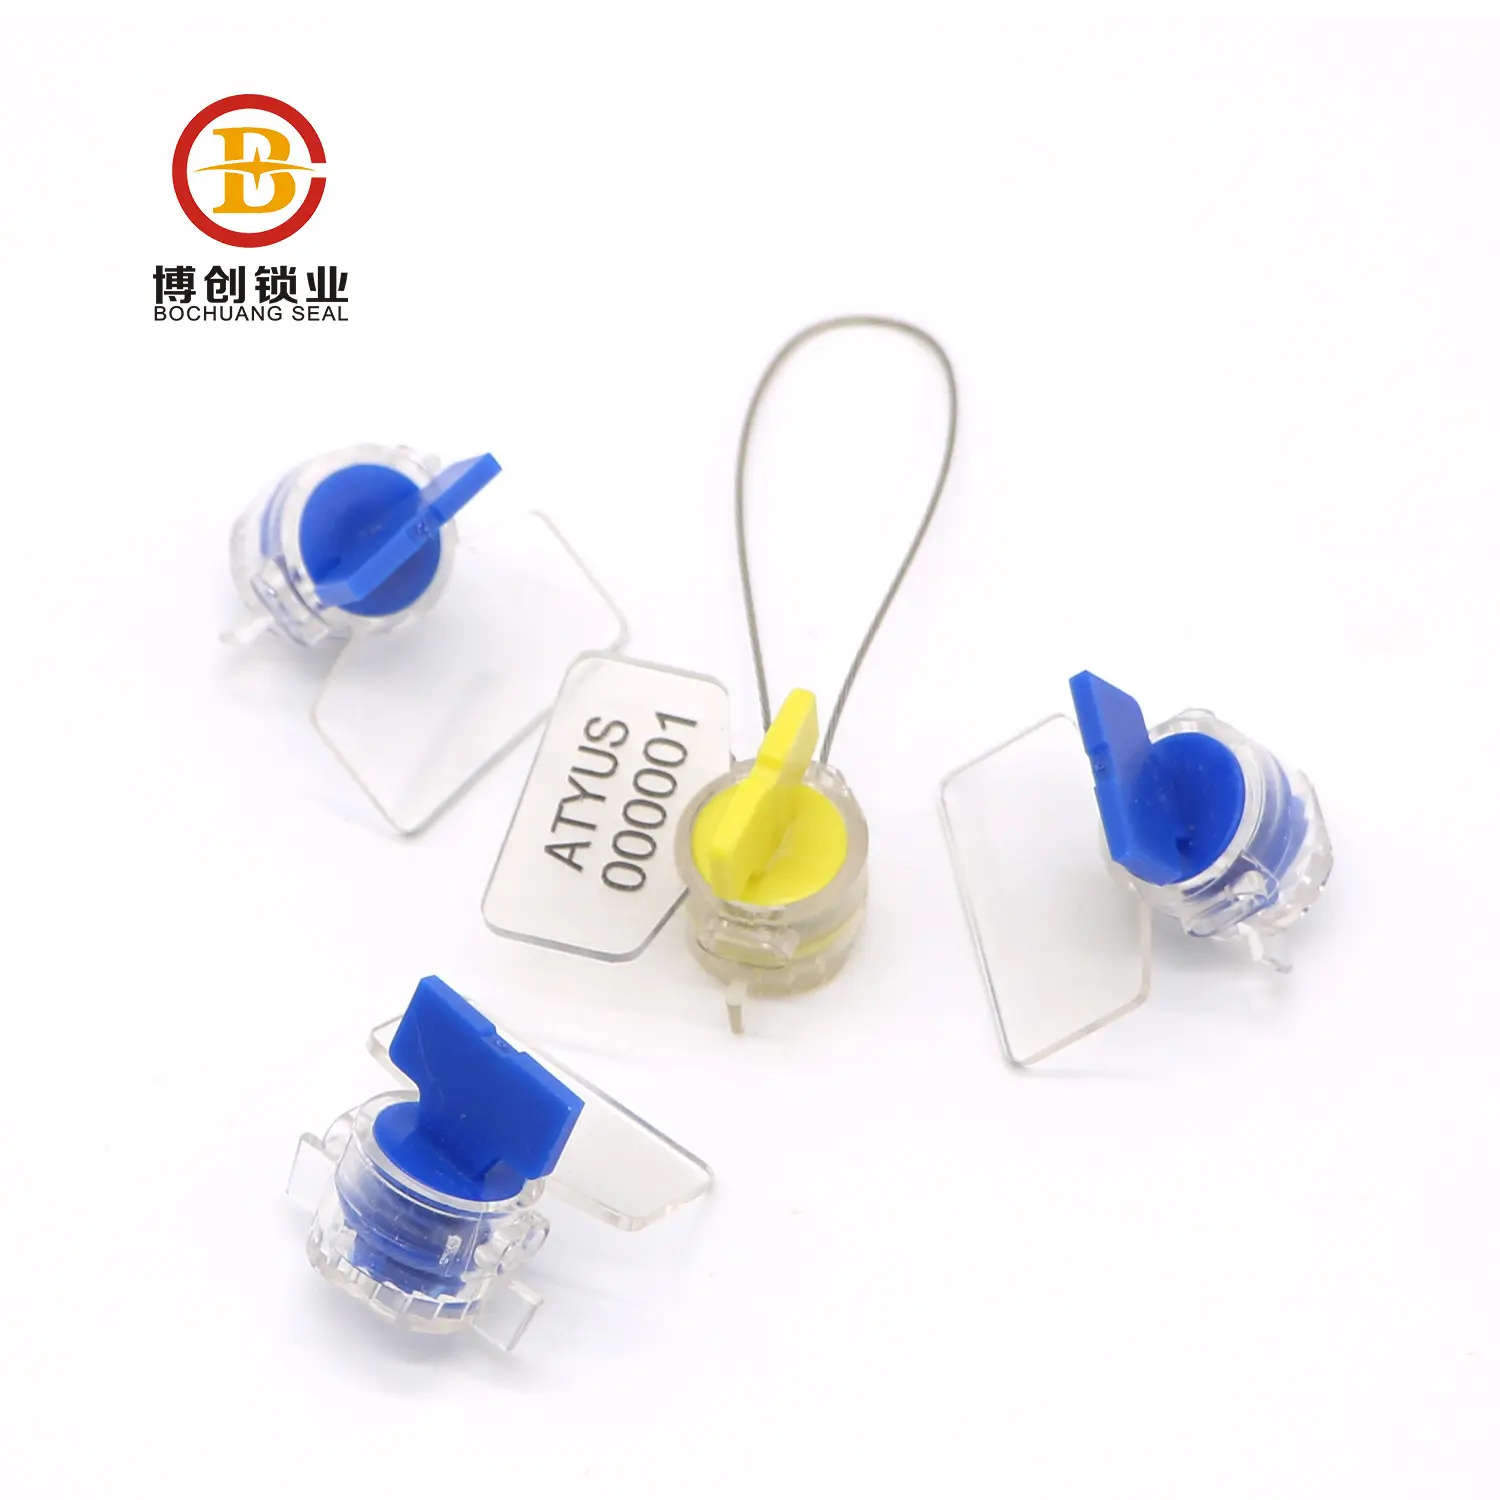 BCM101-medidor de agua, sello de plástico para sello de alambre giratorio